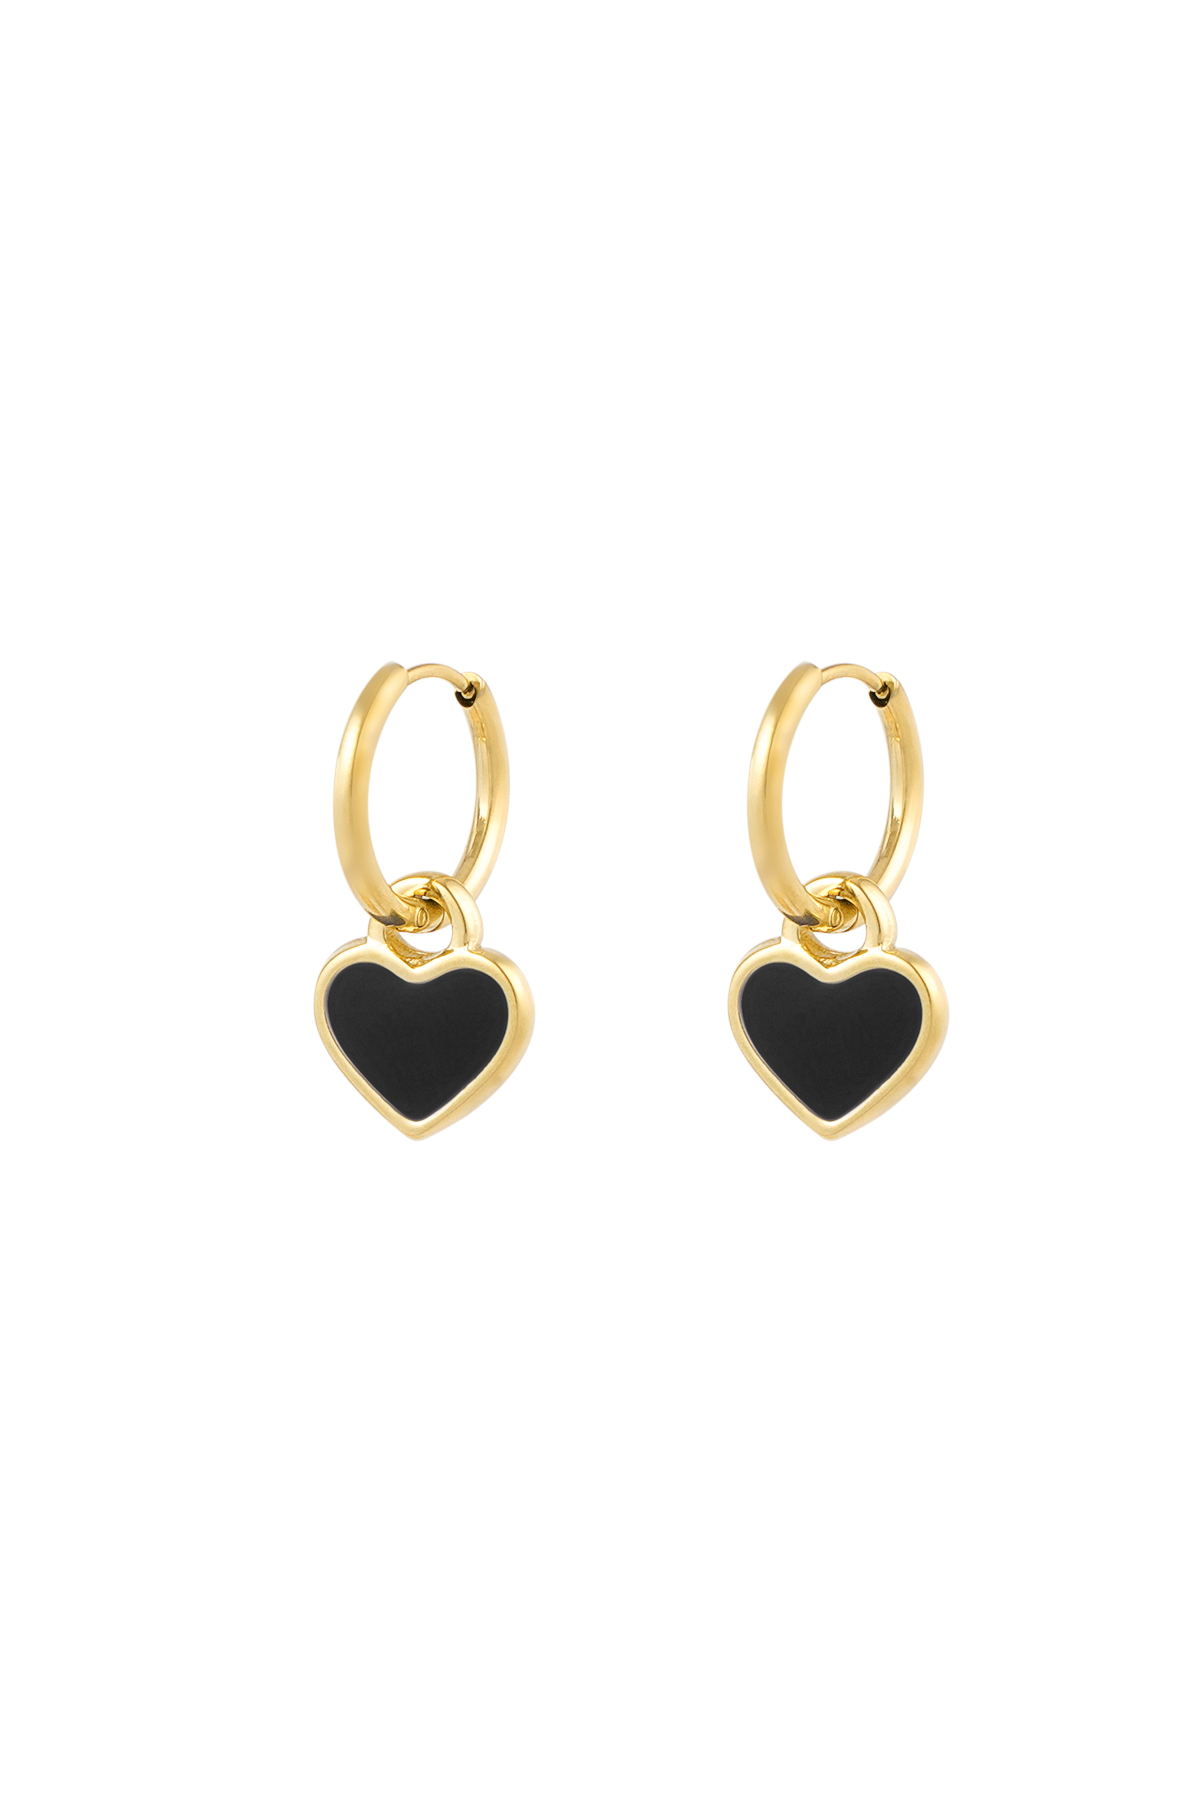 Earrings lover of life - black gold h5 